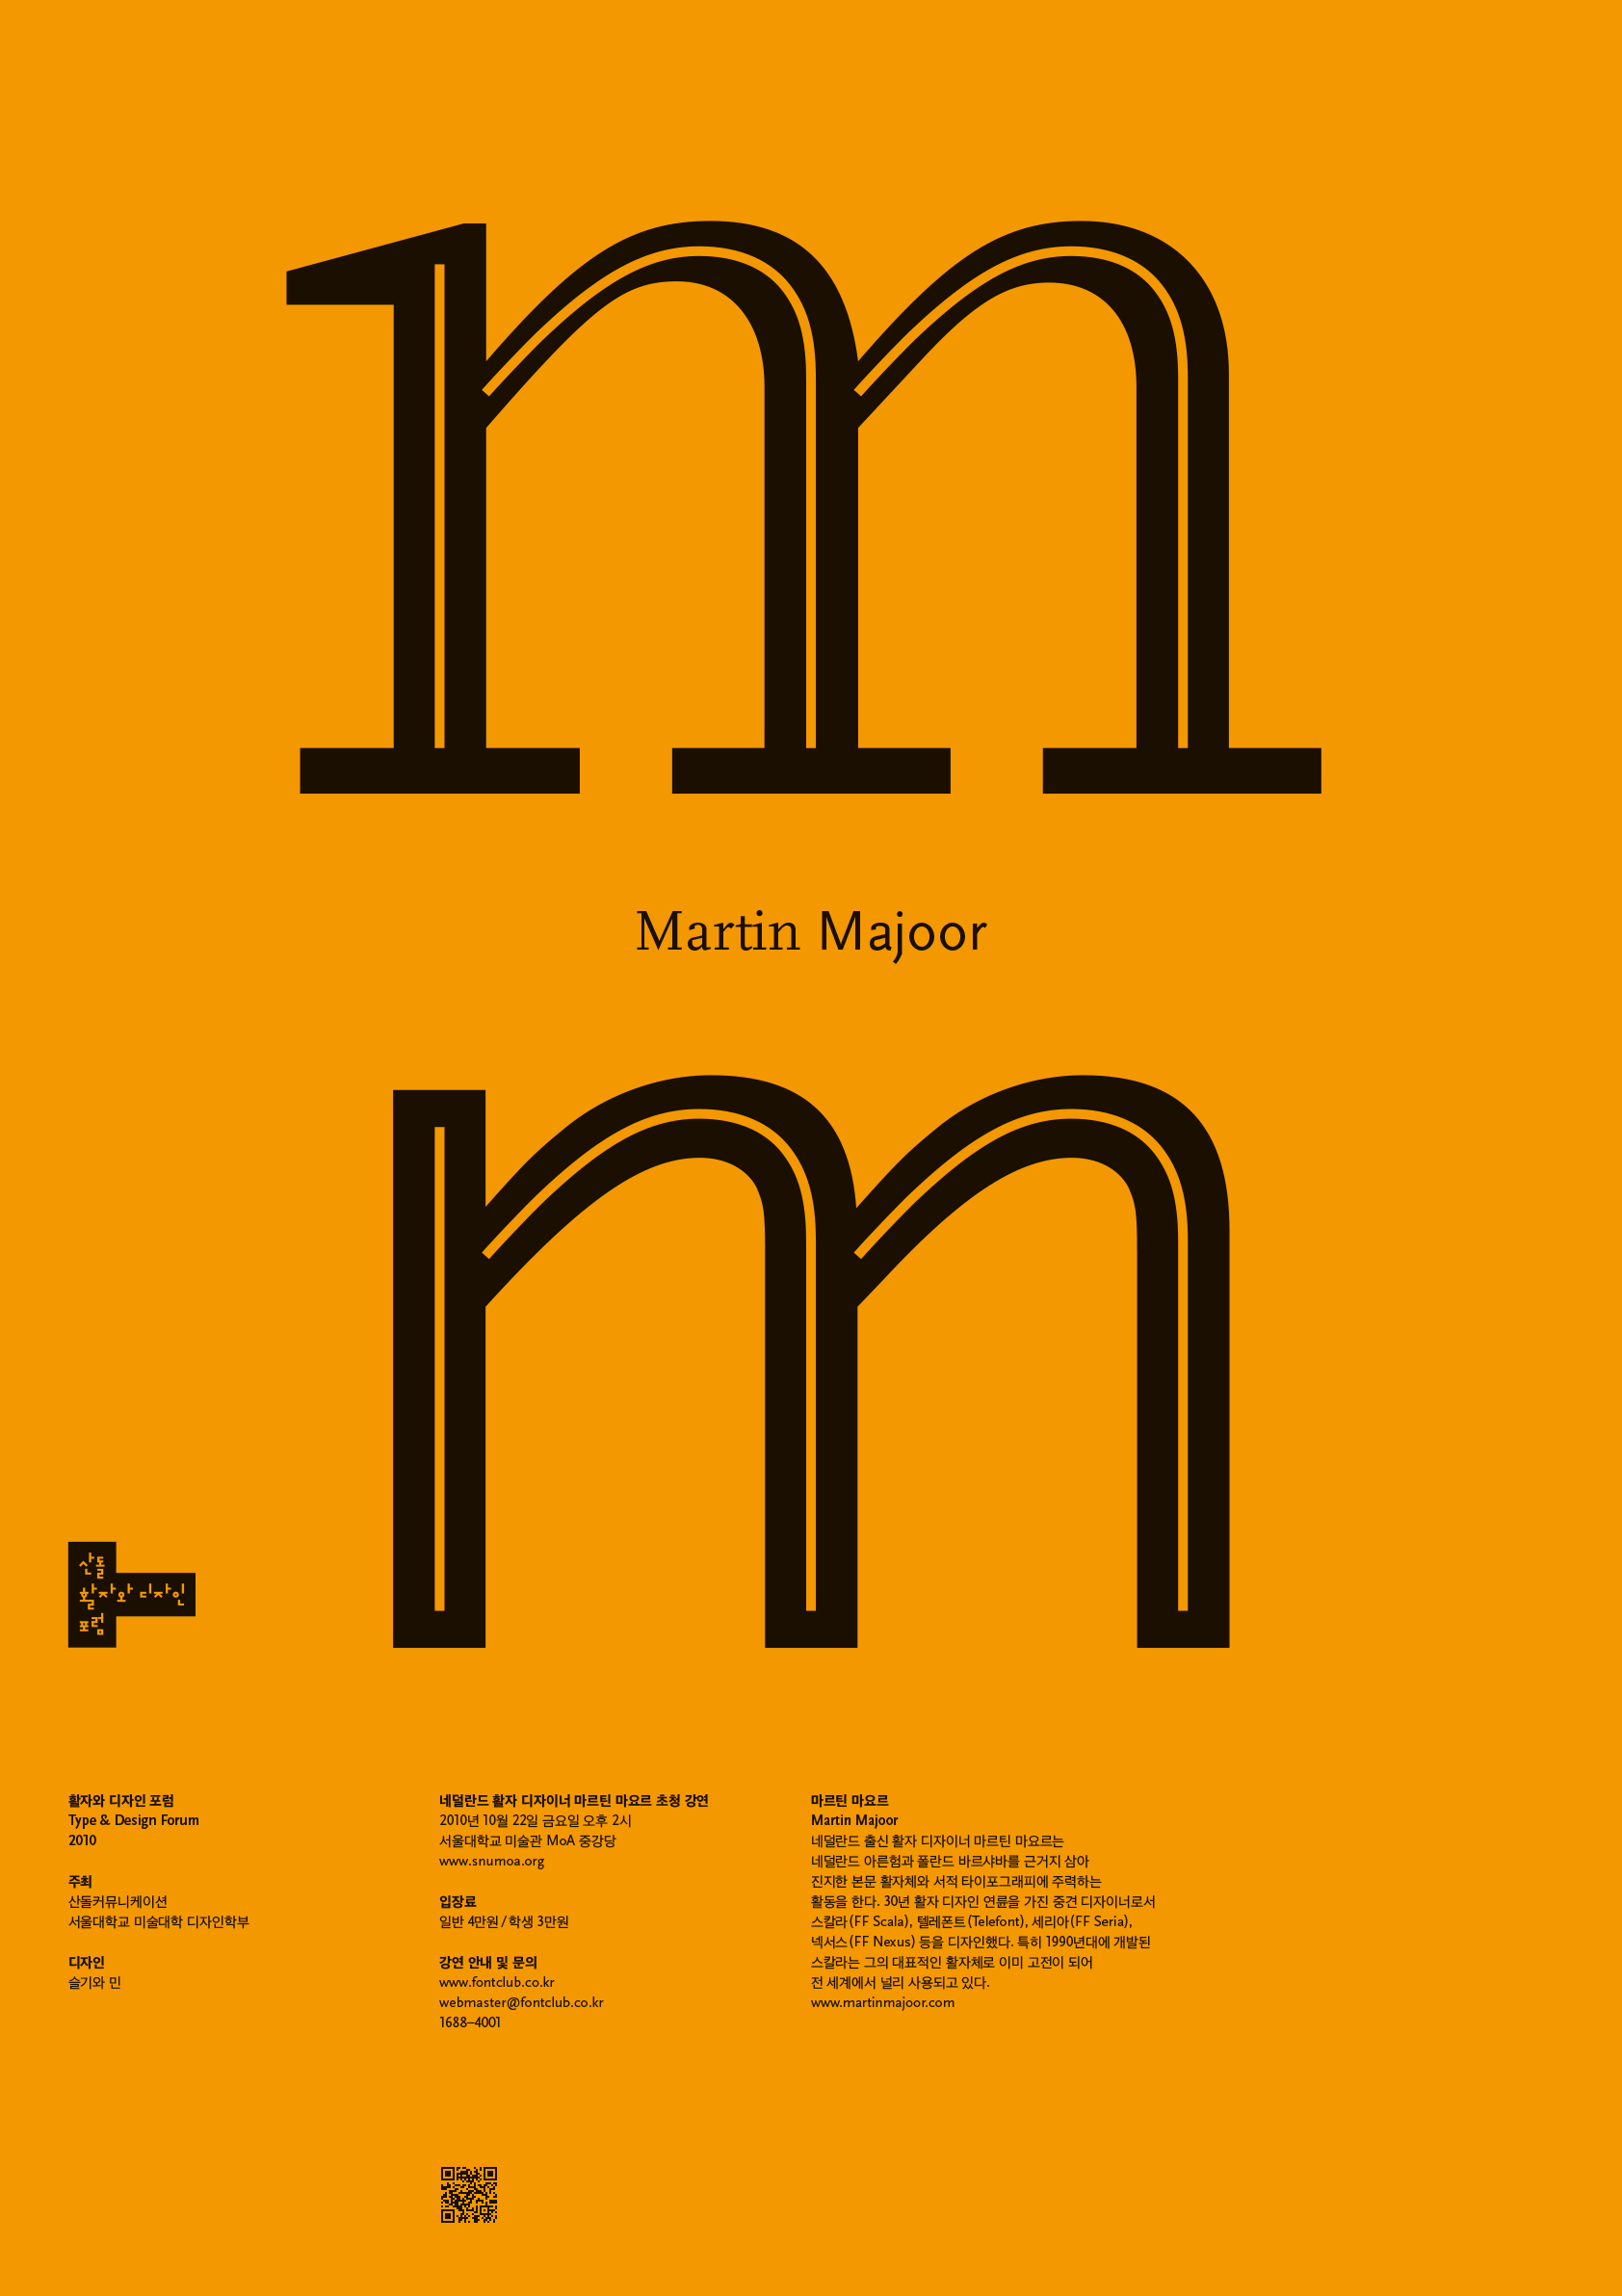 Type_&_Design_Forum_poster